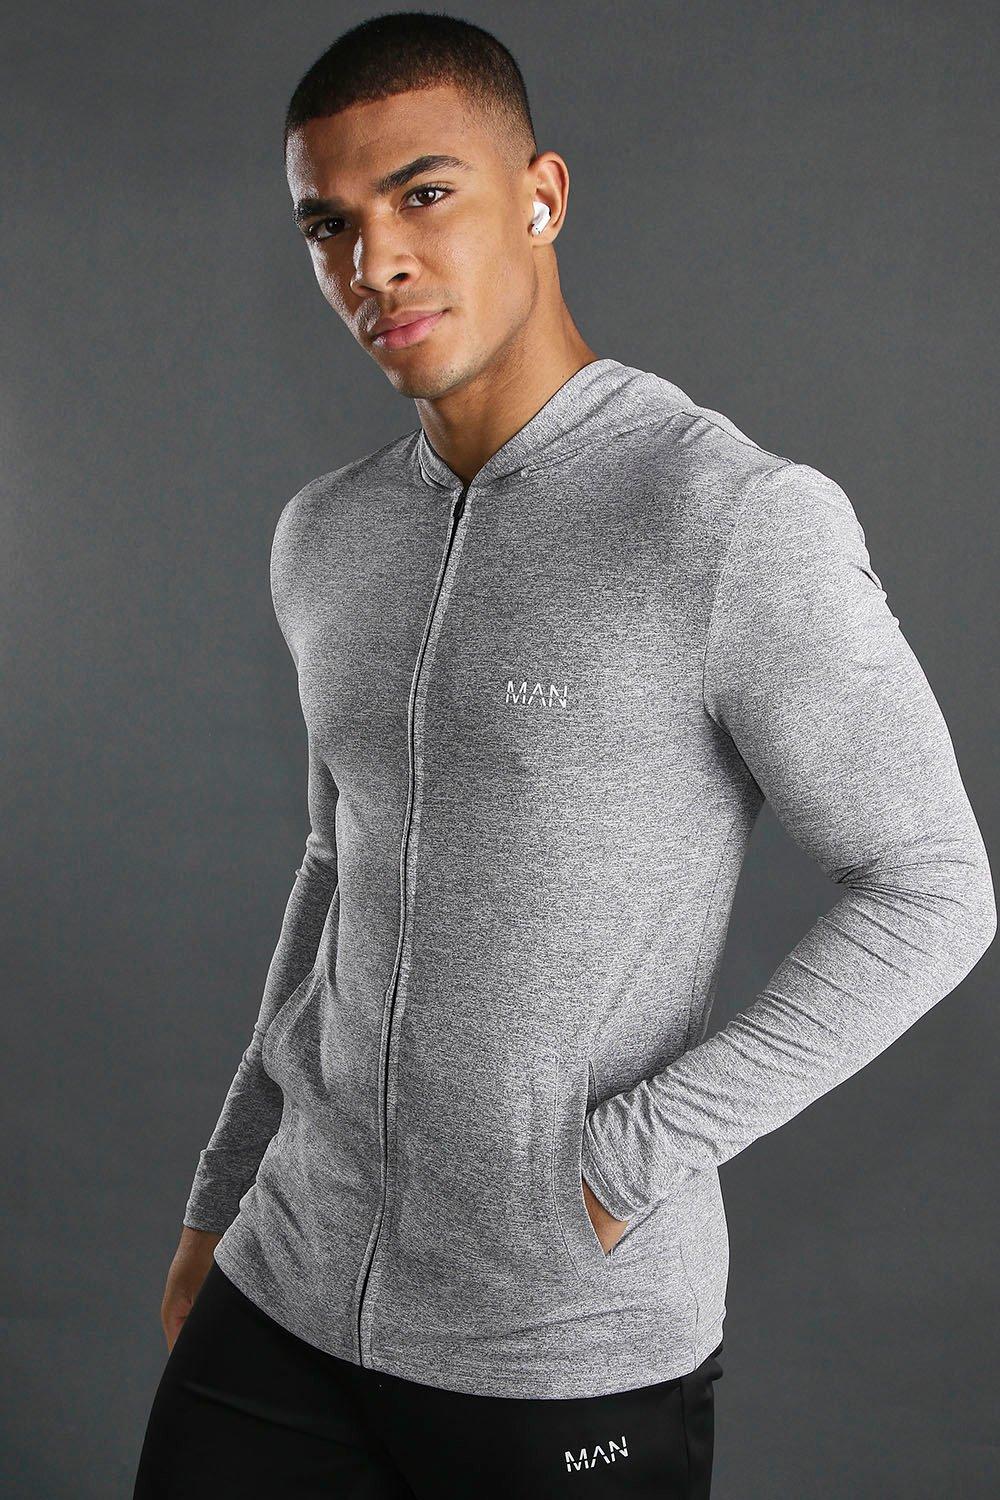 muscle fit grey hoodie